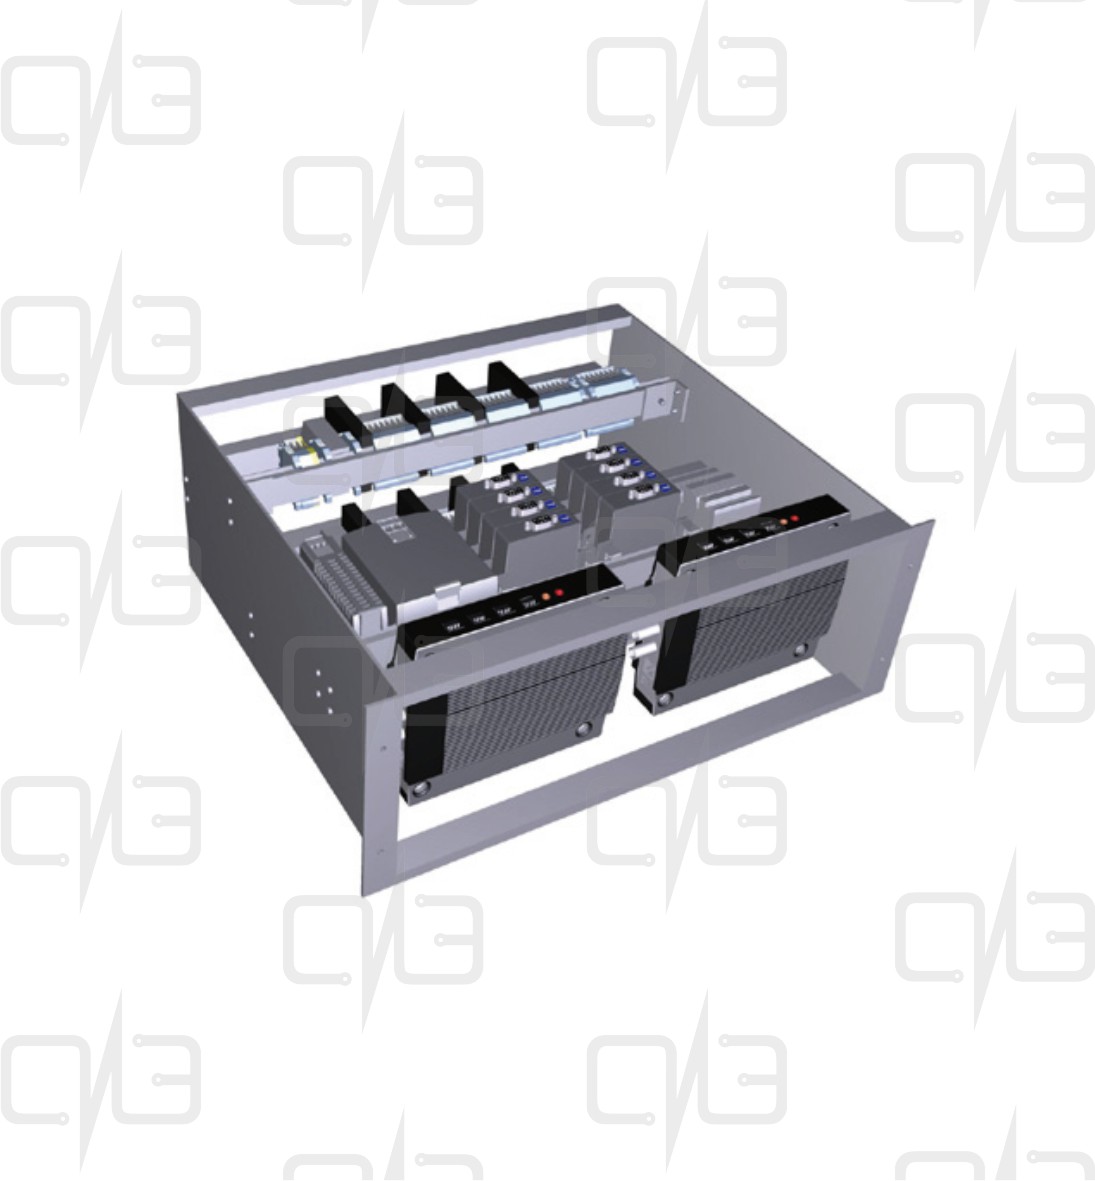 T05-Q2-AM-100 Connection Rack - Q2 Видеосервер с источником питания и точкой доступа Ethernet